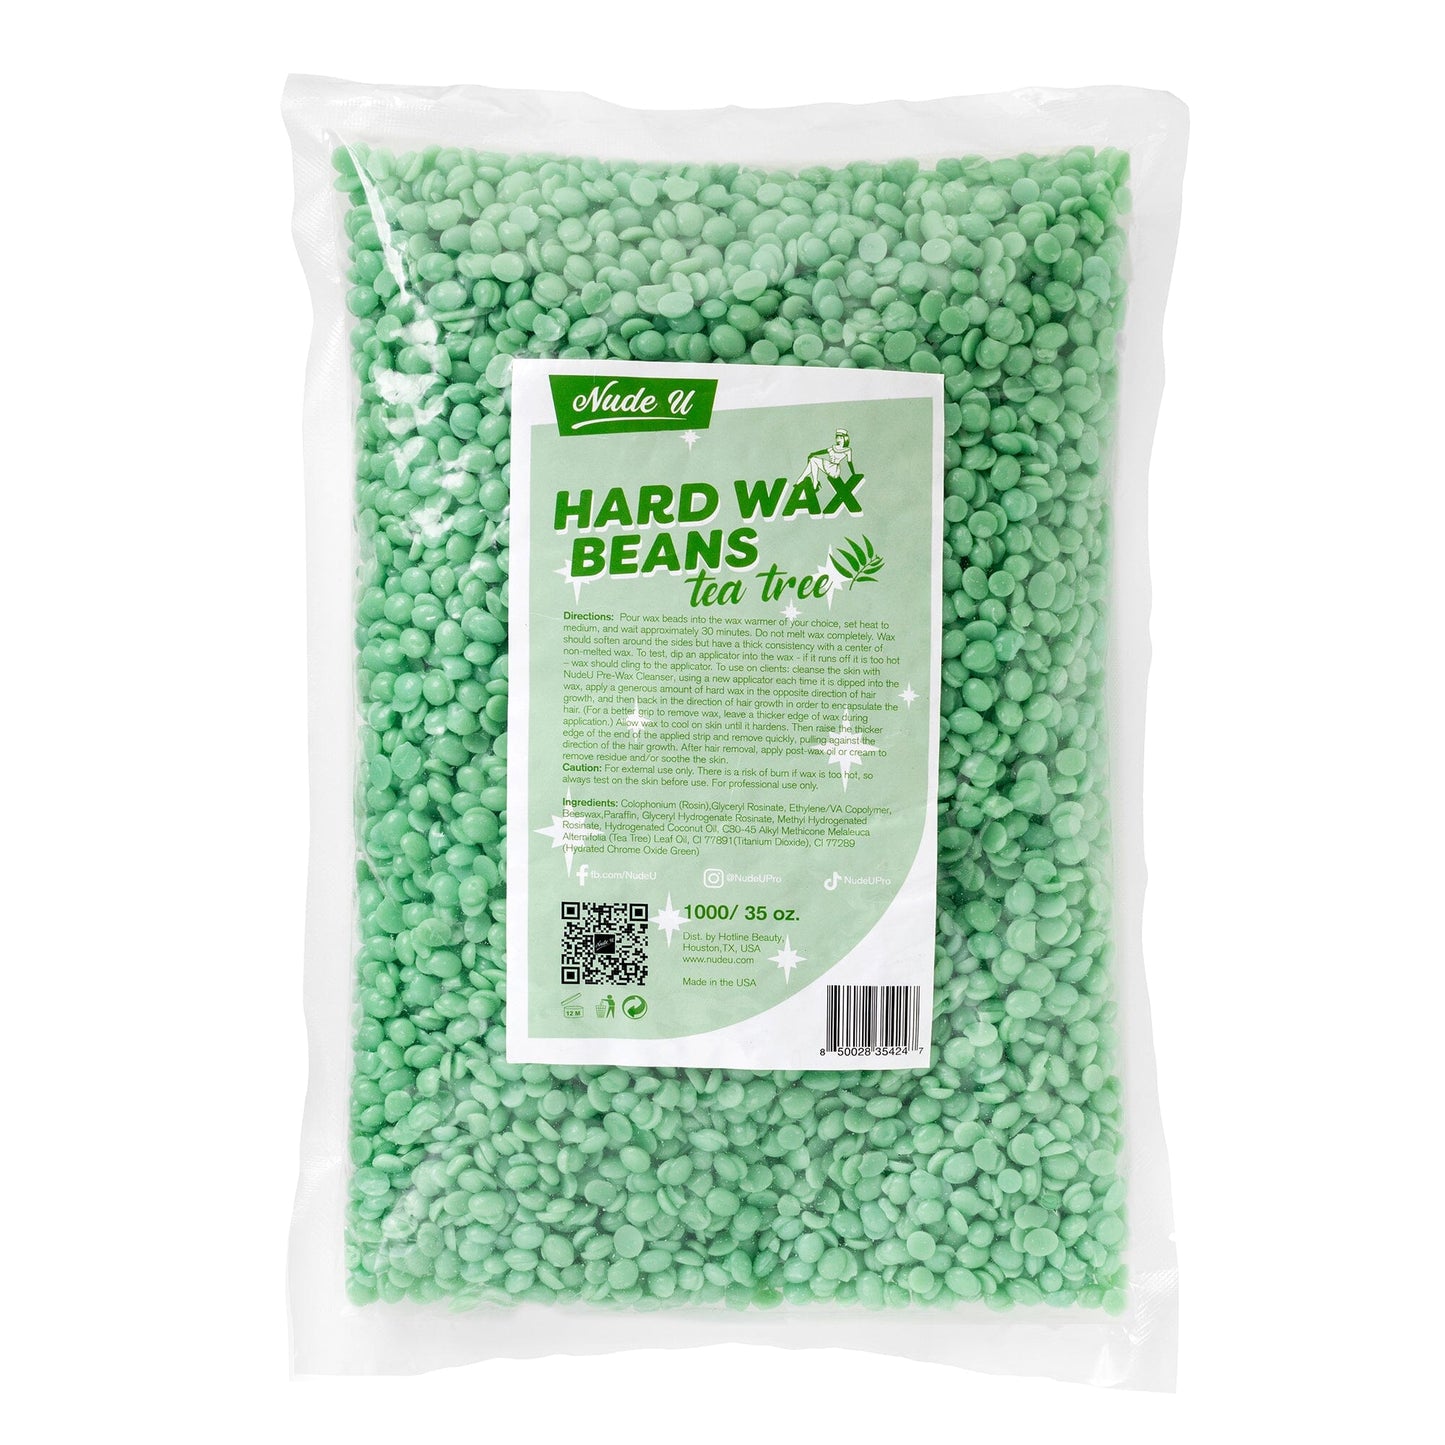 Hard Wax Beans | Tea Tree | NUDE U Waxing Kits & Supplies NUDE U 35oz / 1000g 